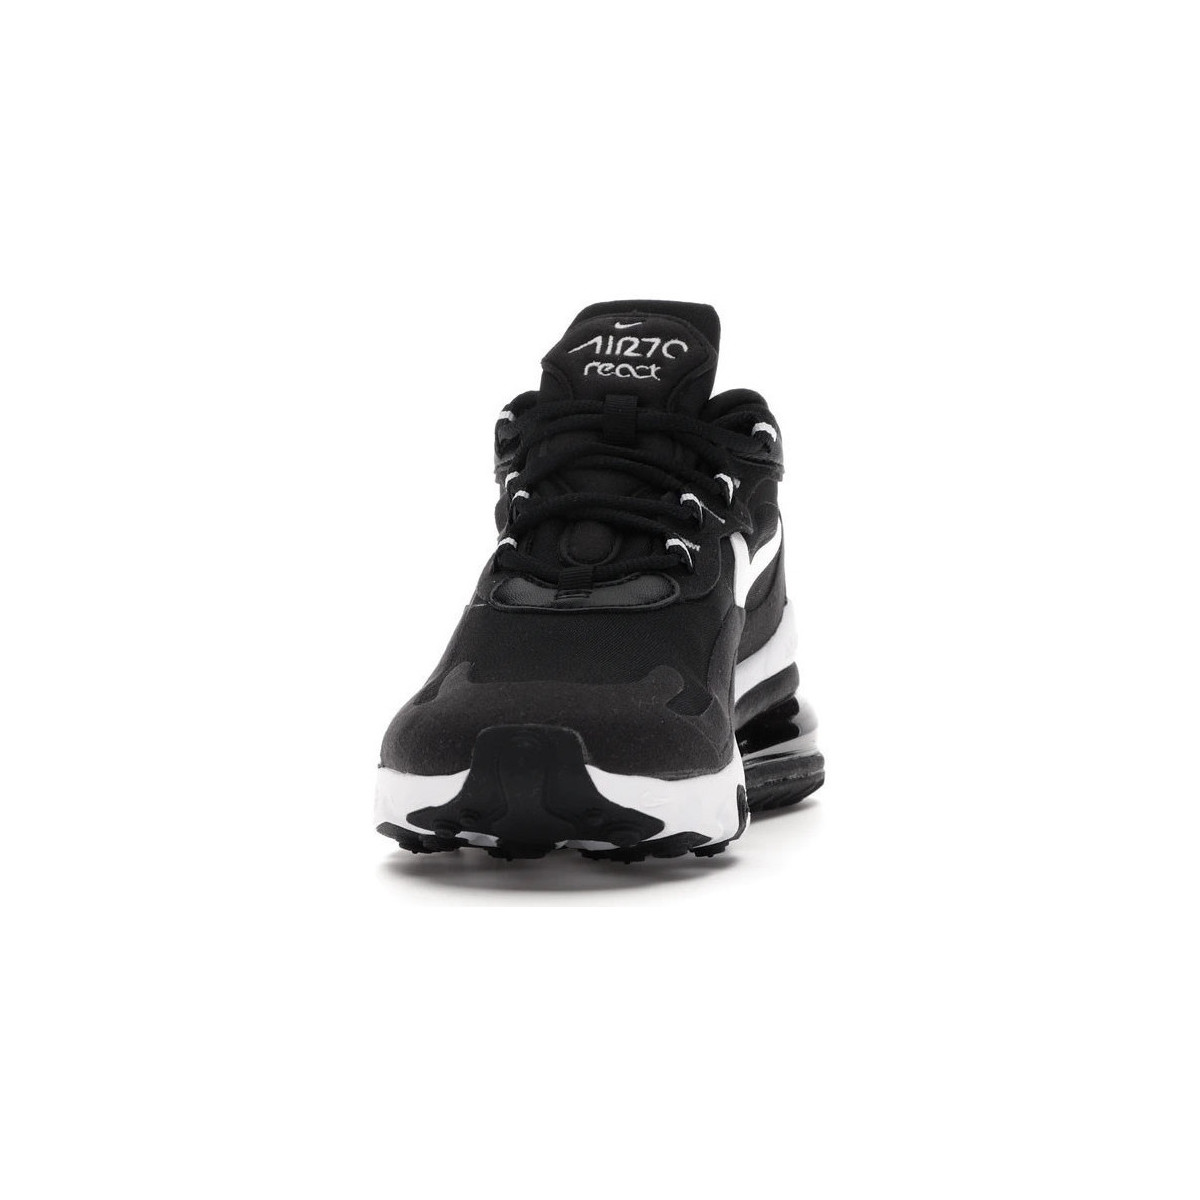 Nike Noir AIR MAX 270 REACT rzmppTy4